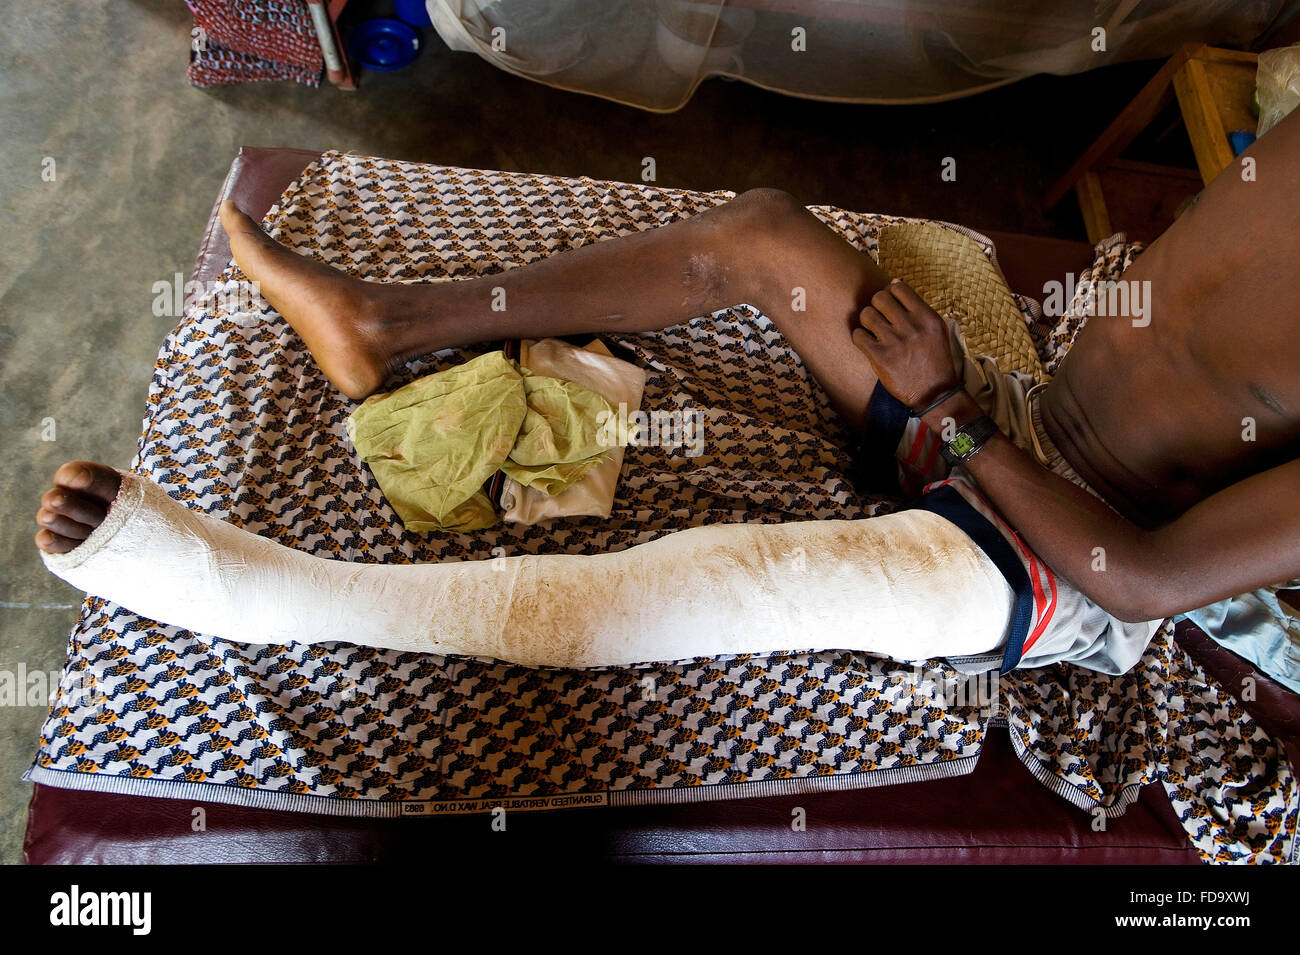 Un joven pierna operada se está recuperando EN UNA DE LAS SALAS DEL CENTRO DE REHABILITACIÓN DE Don Orione en el norte de Togo Foto de stock